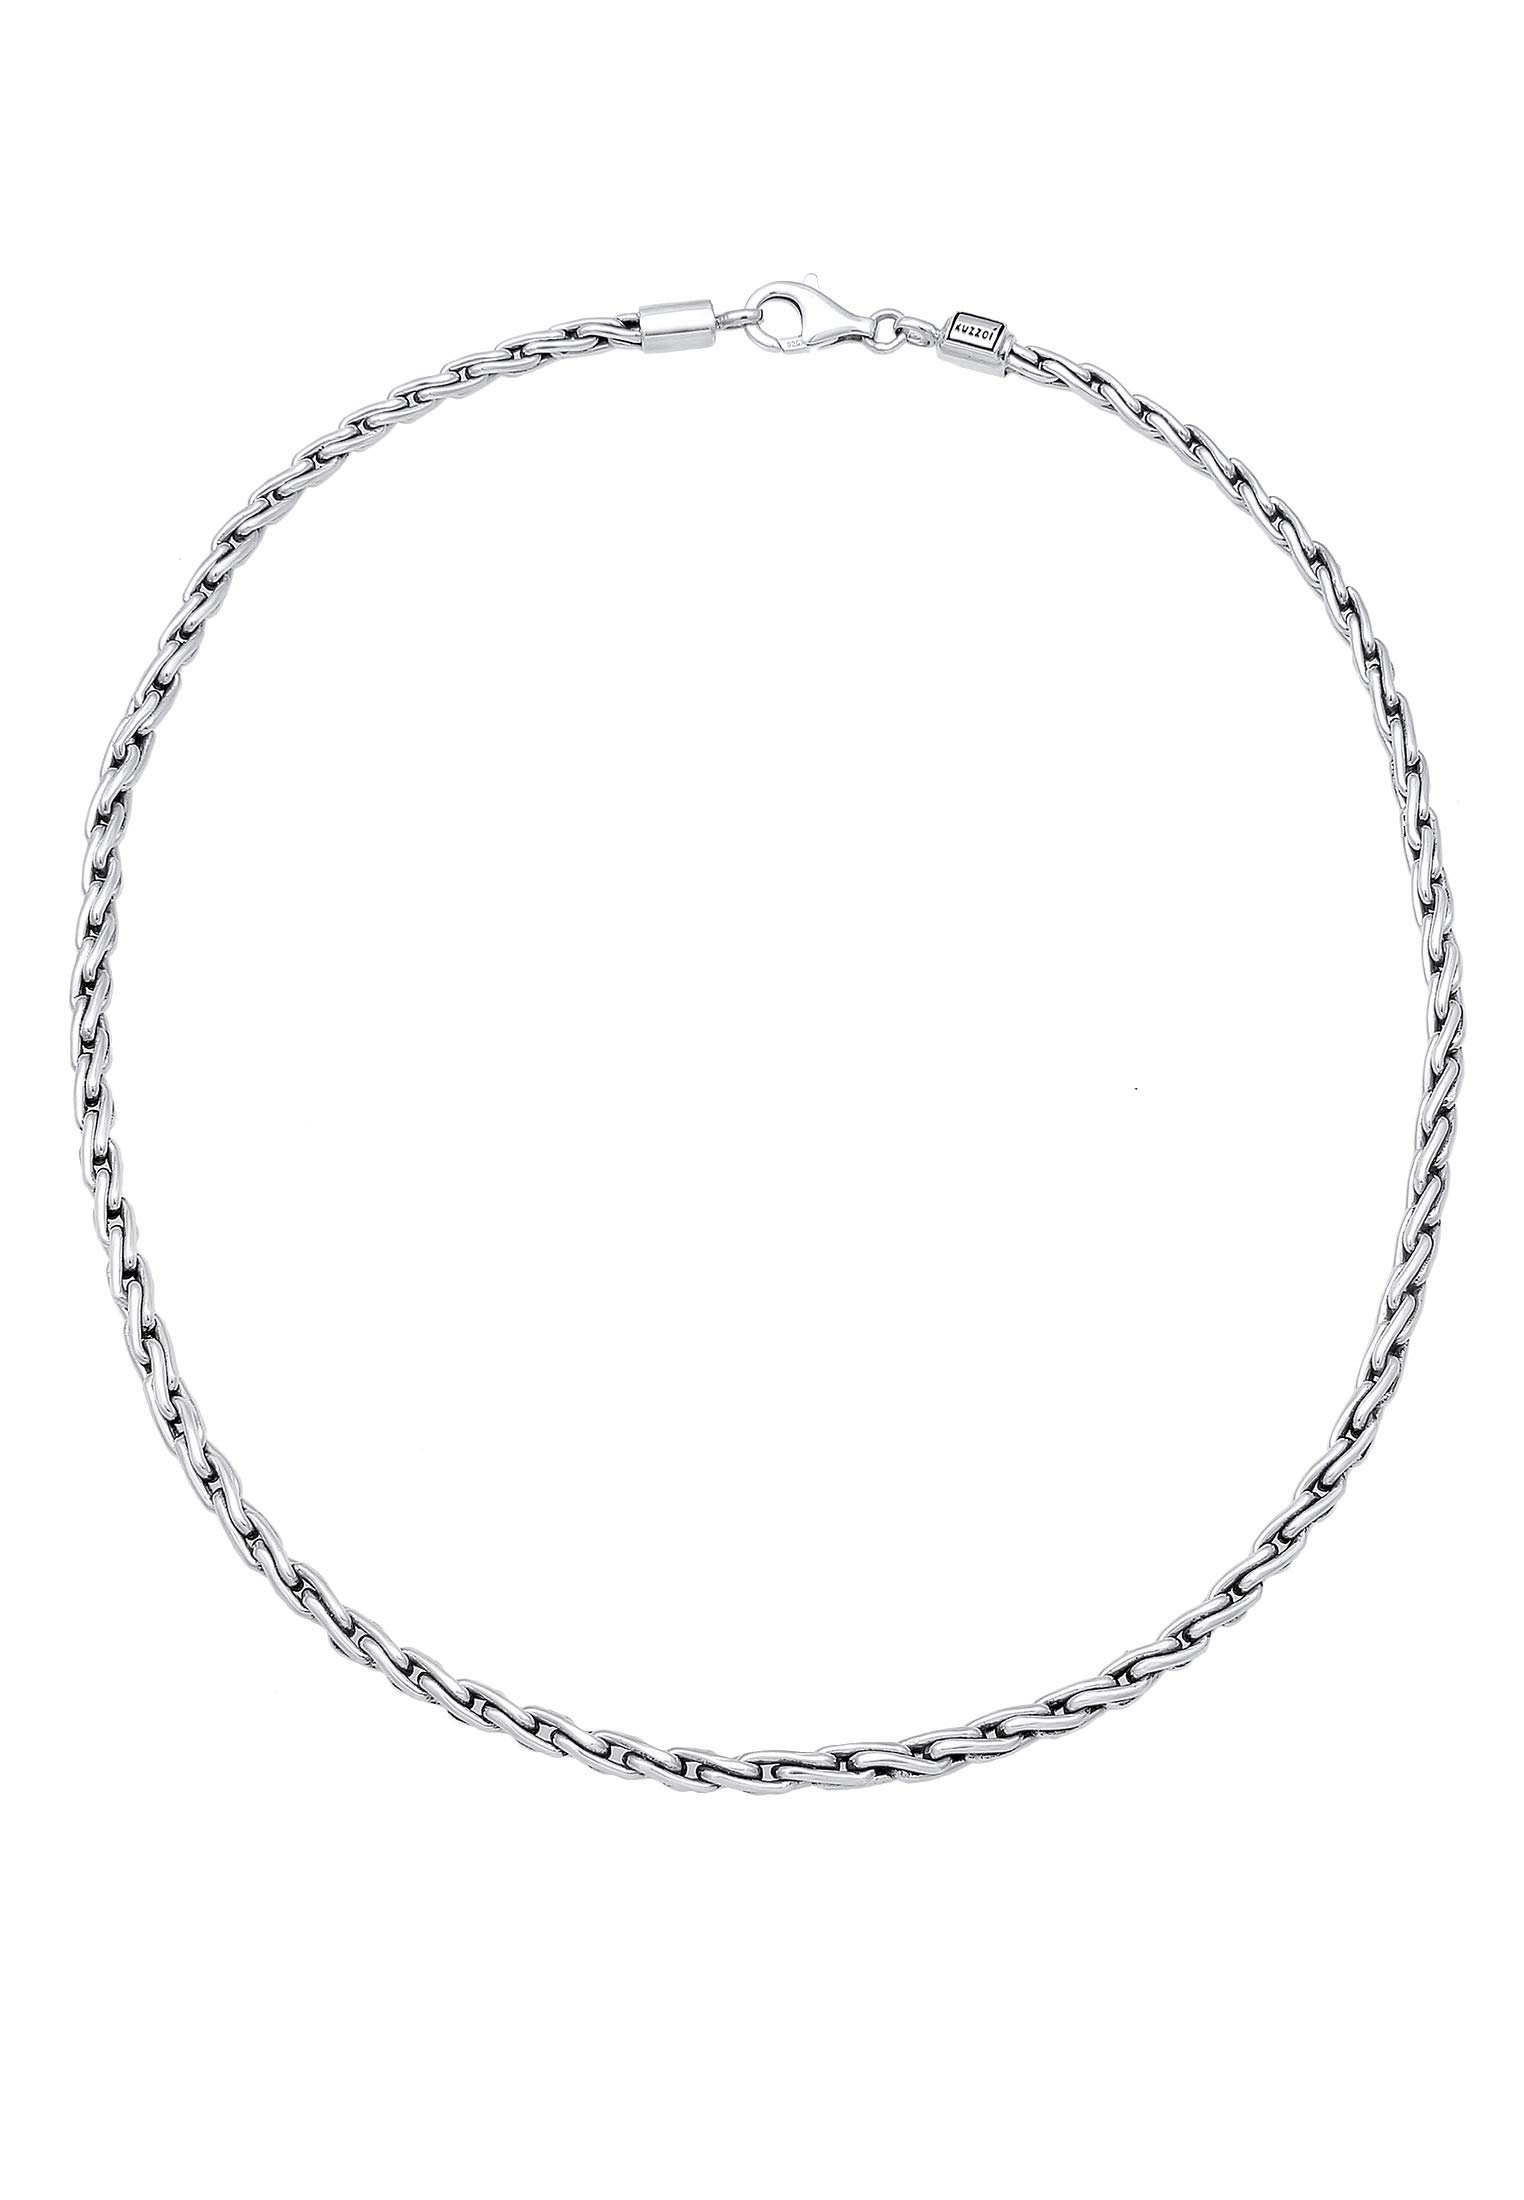 Kuzzoi Massive 925 Silber Königskette Herren Halskette, Dicke 4mm, Länge 50 cm, mit Schmuckbox, Herrenkette Silberkette ohne Anhänger - 0110970118_50